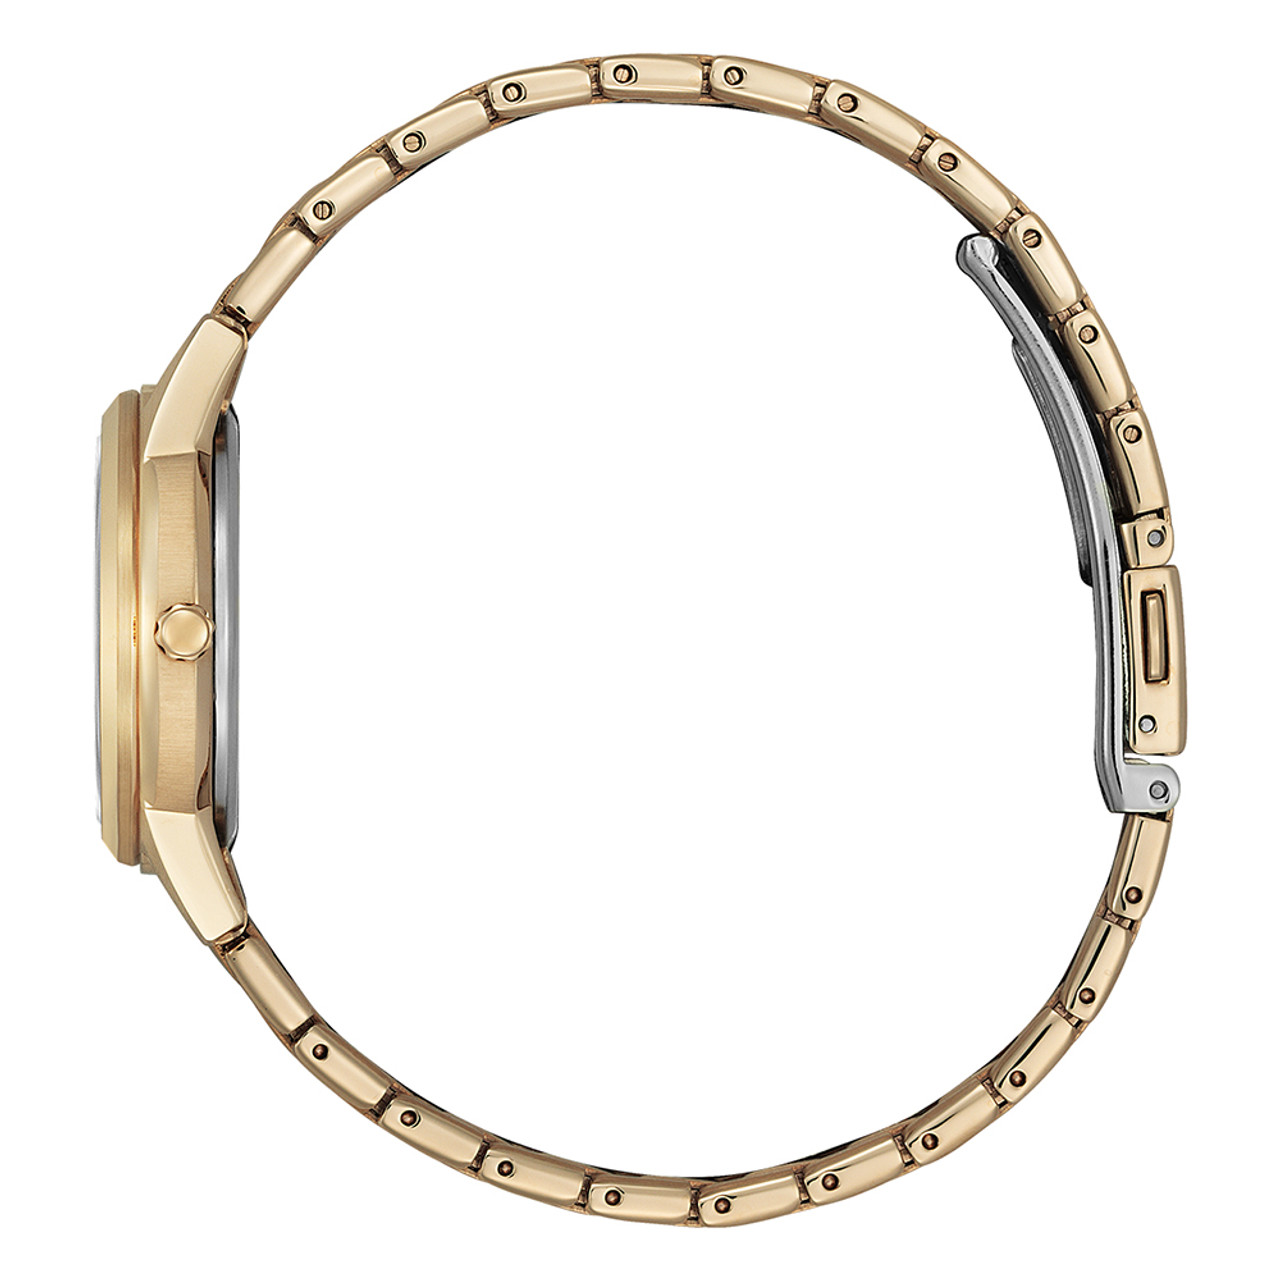 Citizen Eco-Drive Ladies Gold Tone Bracelet Watch FE1243-83A